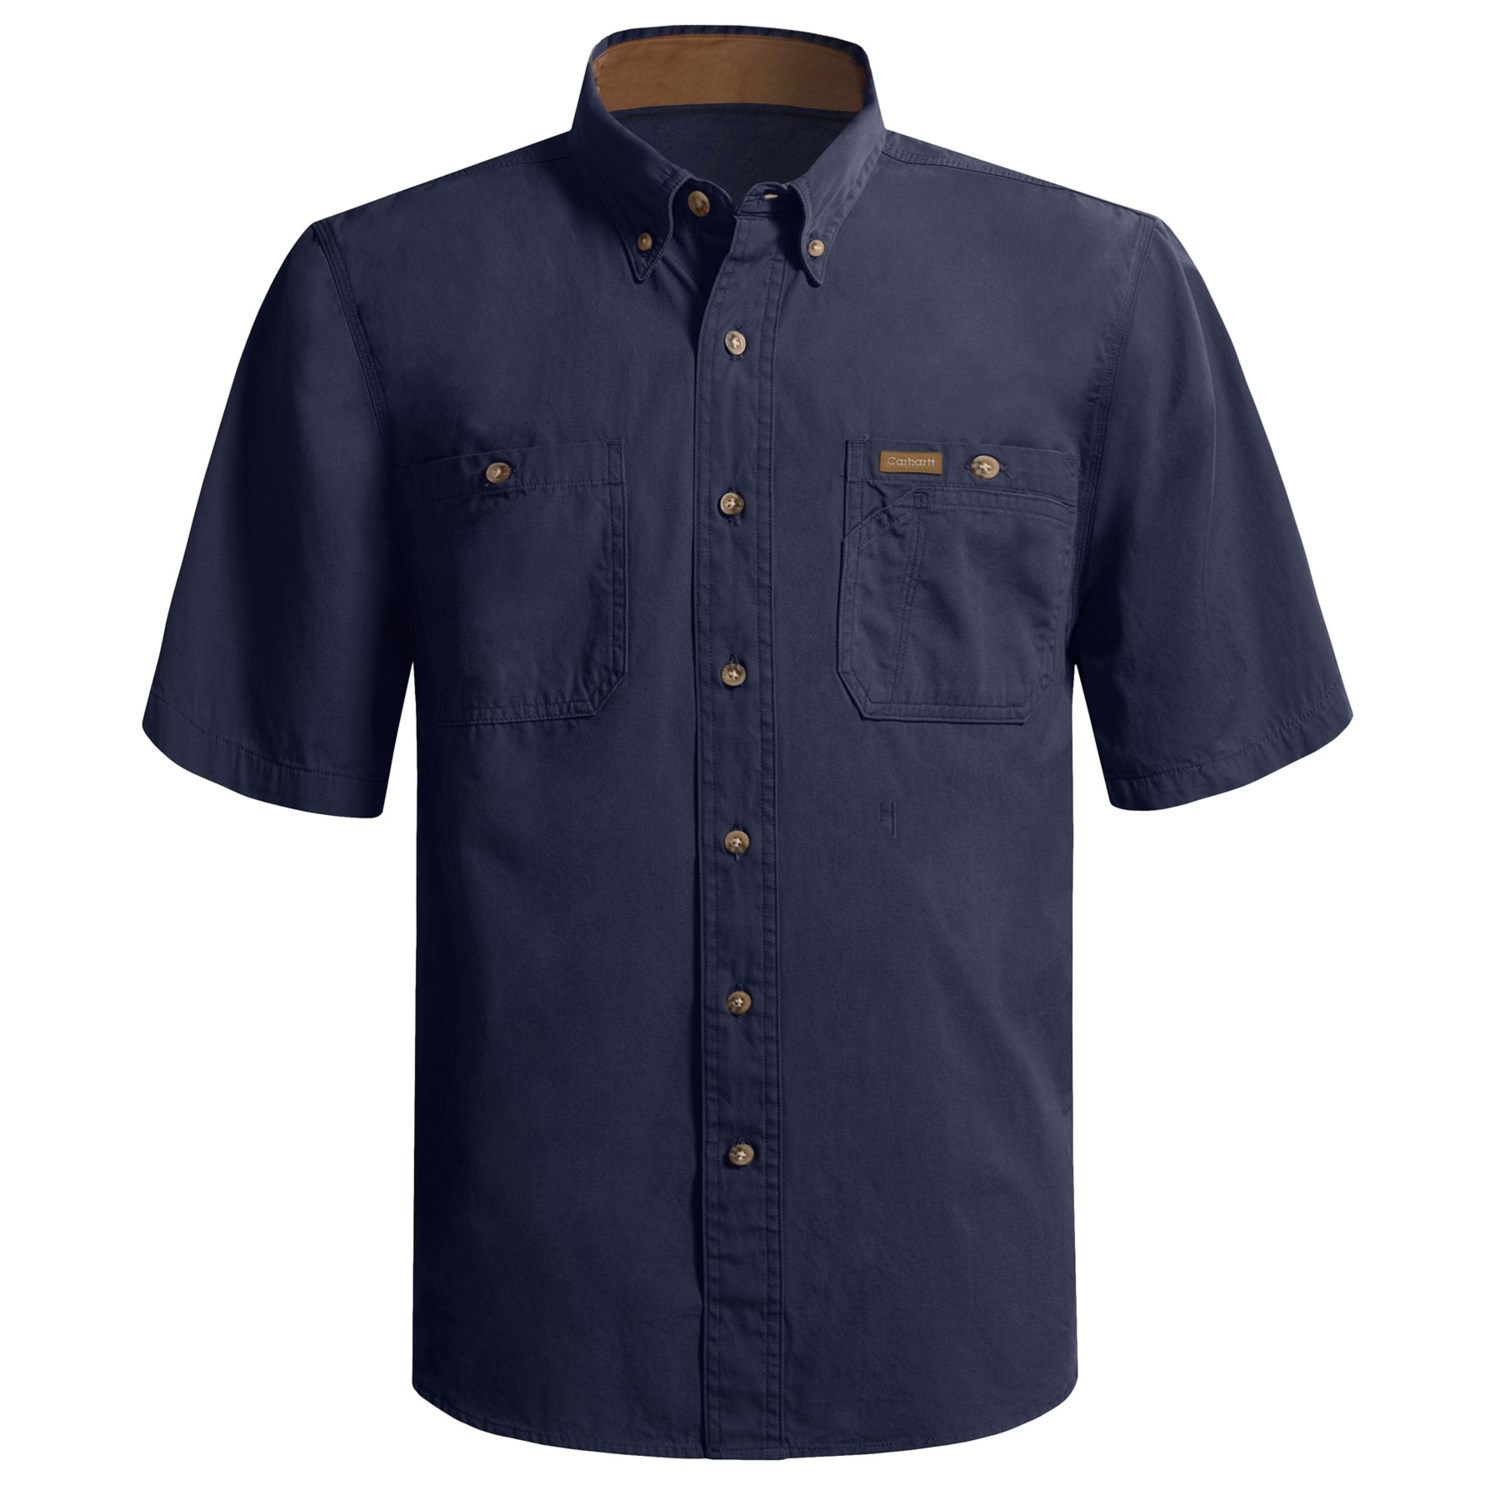 Carhartt Tradesmen Canvas Work Shirt - Cotton, Short Sleeve (For Men)